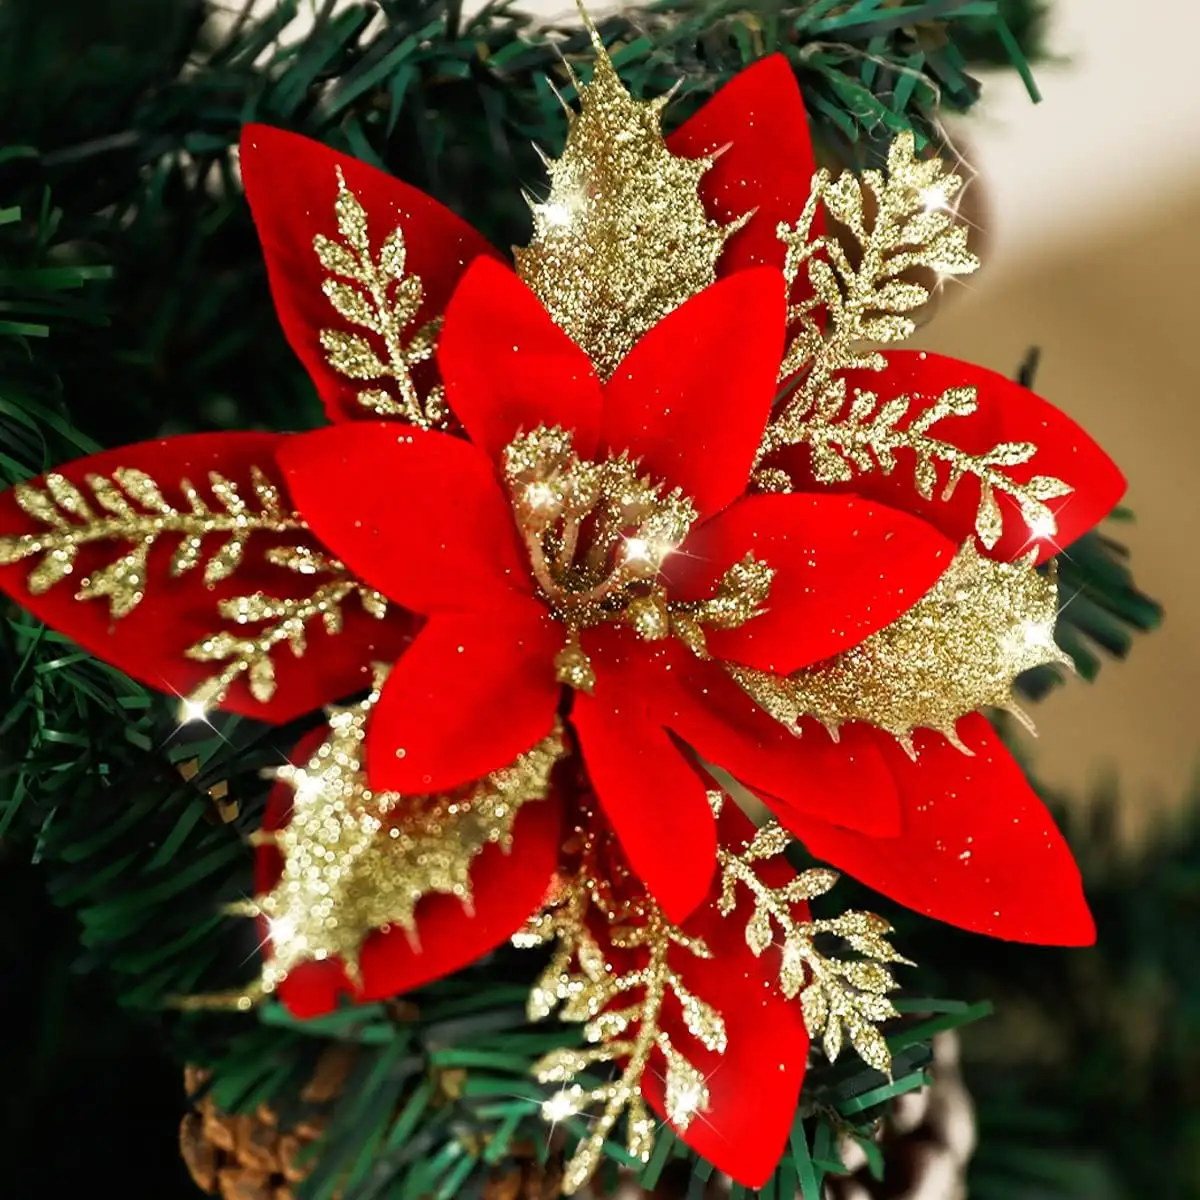 Poinsettia Décorations De Noël Fleurs De Poinsettia Artificielles Ornements De Paillettes Rouges pour La Décoration D'arbre De Noël